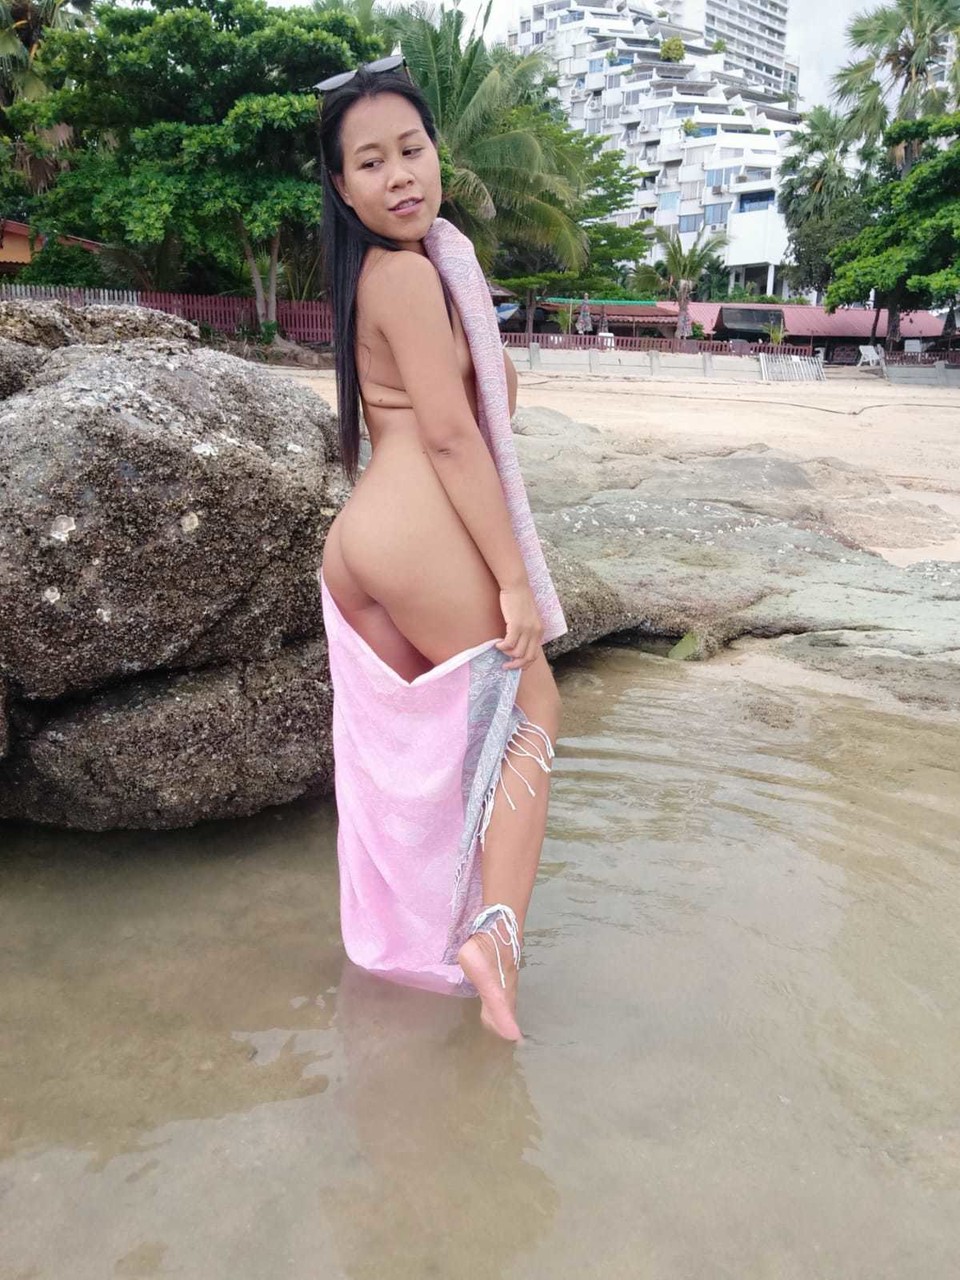 Gorgeous Asian amateur Kiki Asia shows her hot ass in a bikini at the beach ポルノ写真 #425545193 | TukTuk Thailand Pics, Kiki Asia, Thai, モバイルポルノ